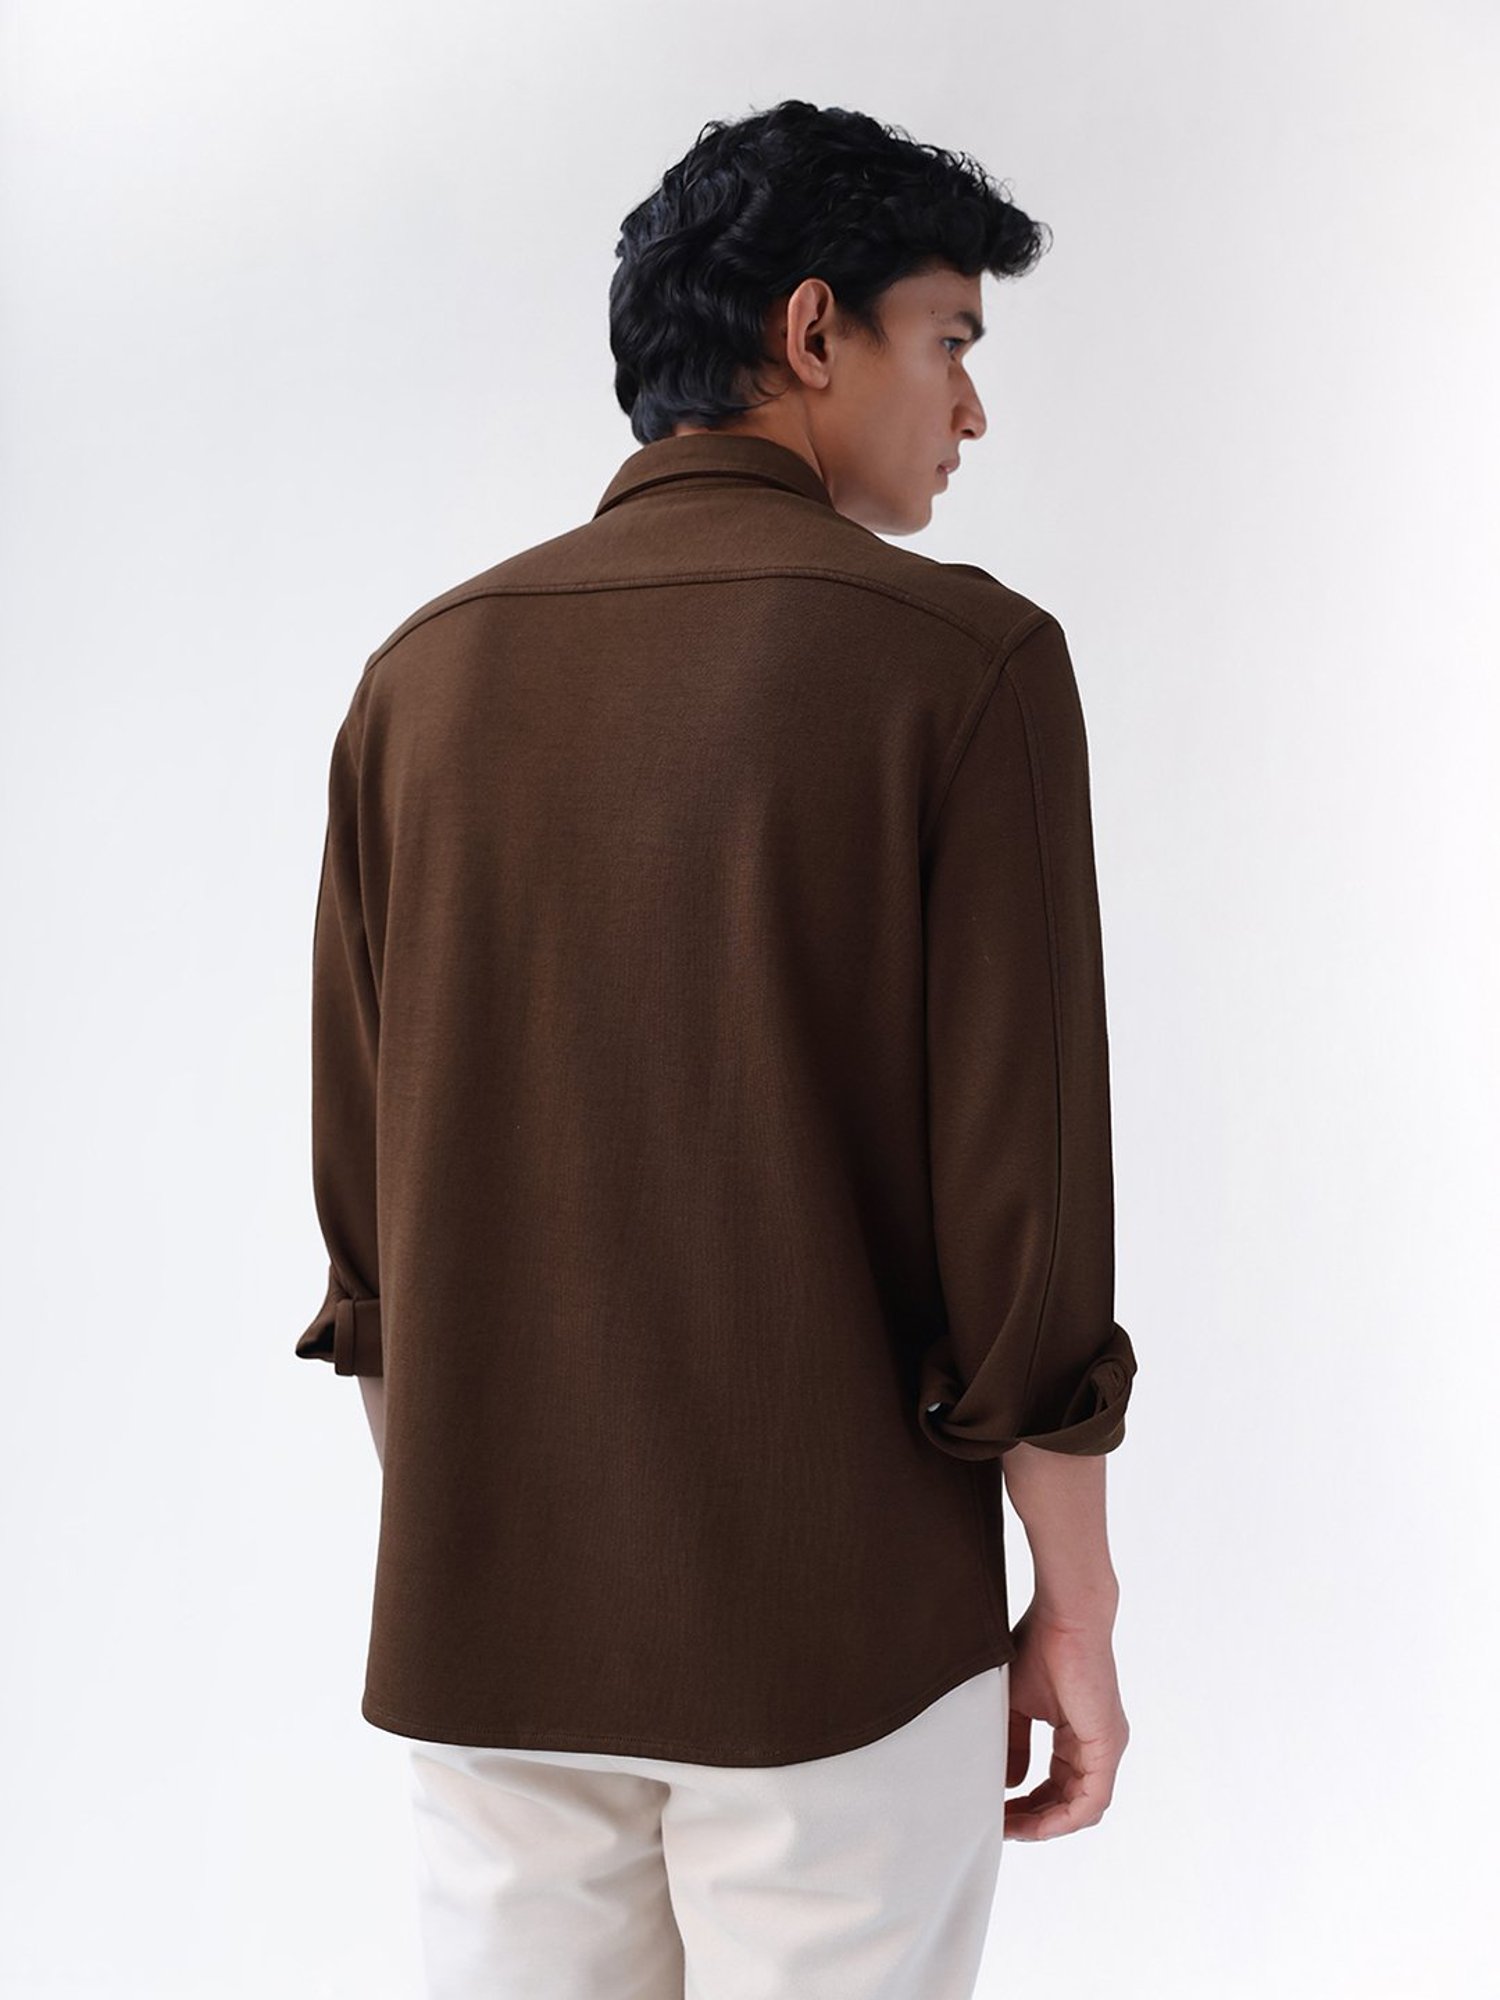 Buy ANDAMEN Dark Brown Regular Fit Shirt for Men's Online @ Tata CLiQ